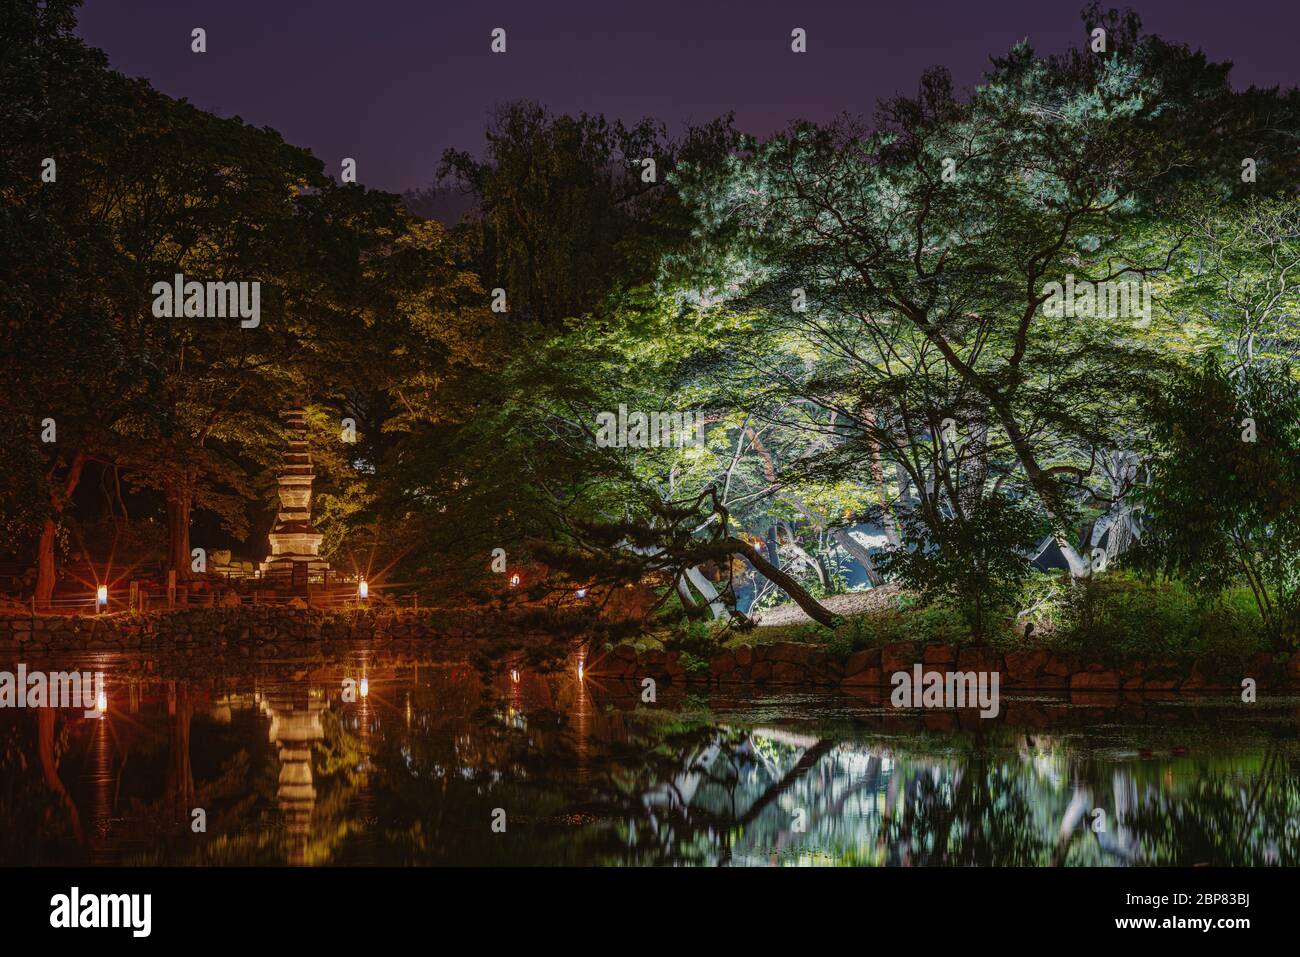 Seúl, Corea del Sur - 17 de mayo de 2020: Changgyeonggung es uno de los únicos palacios en Corea que ofrecen horarios regulares de noche. Iluminado maravillosamente por la noche, th Foto de stock